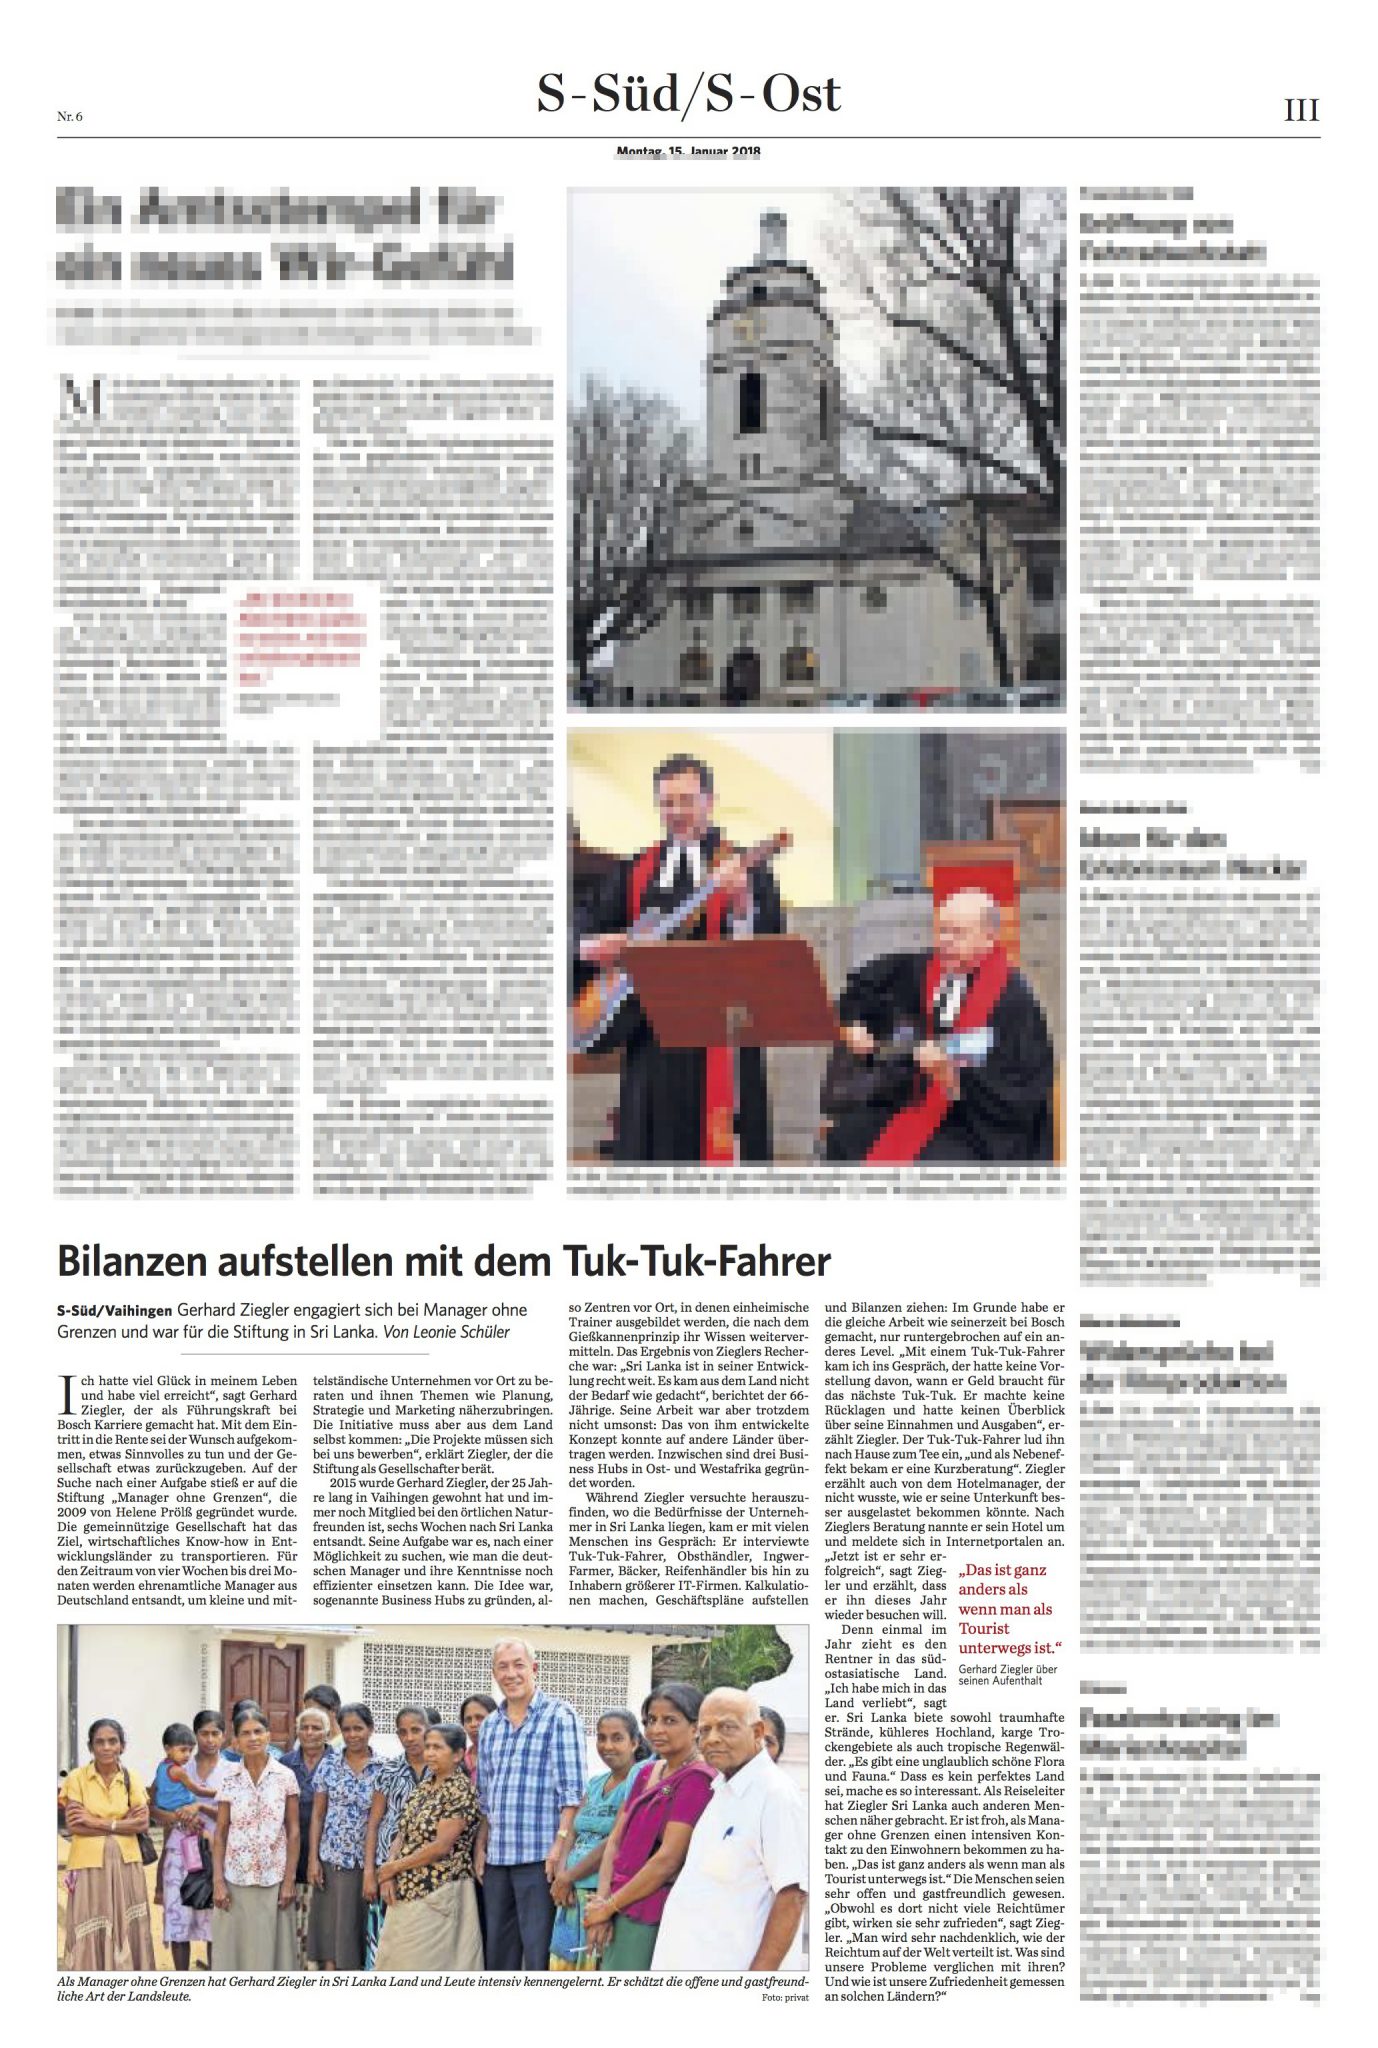 Manager ohne Grenzen in der Stuttgarter Zeitung, Januar 2018